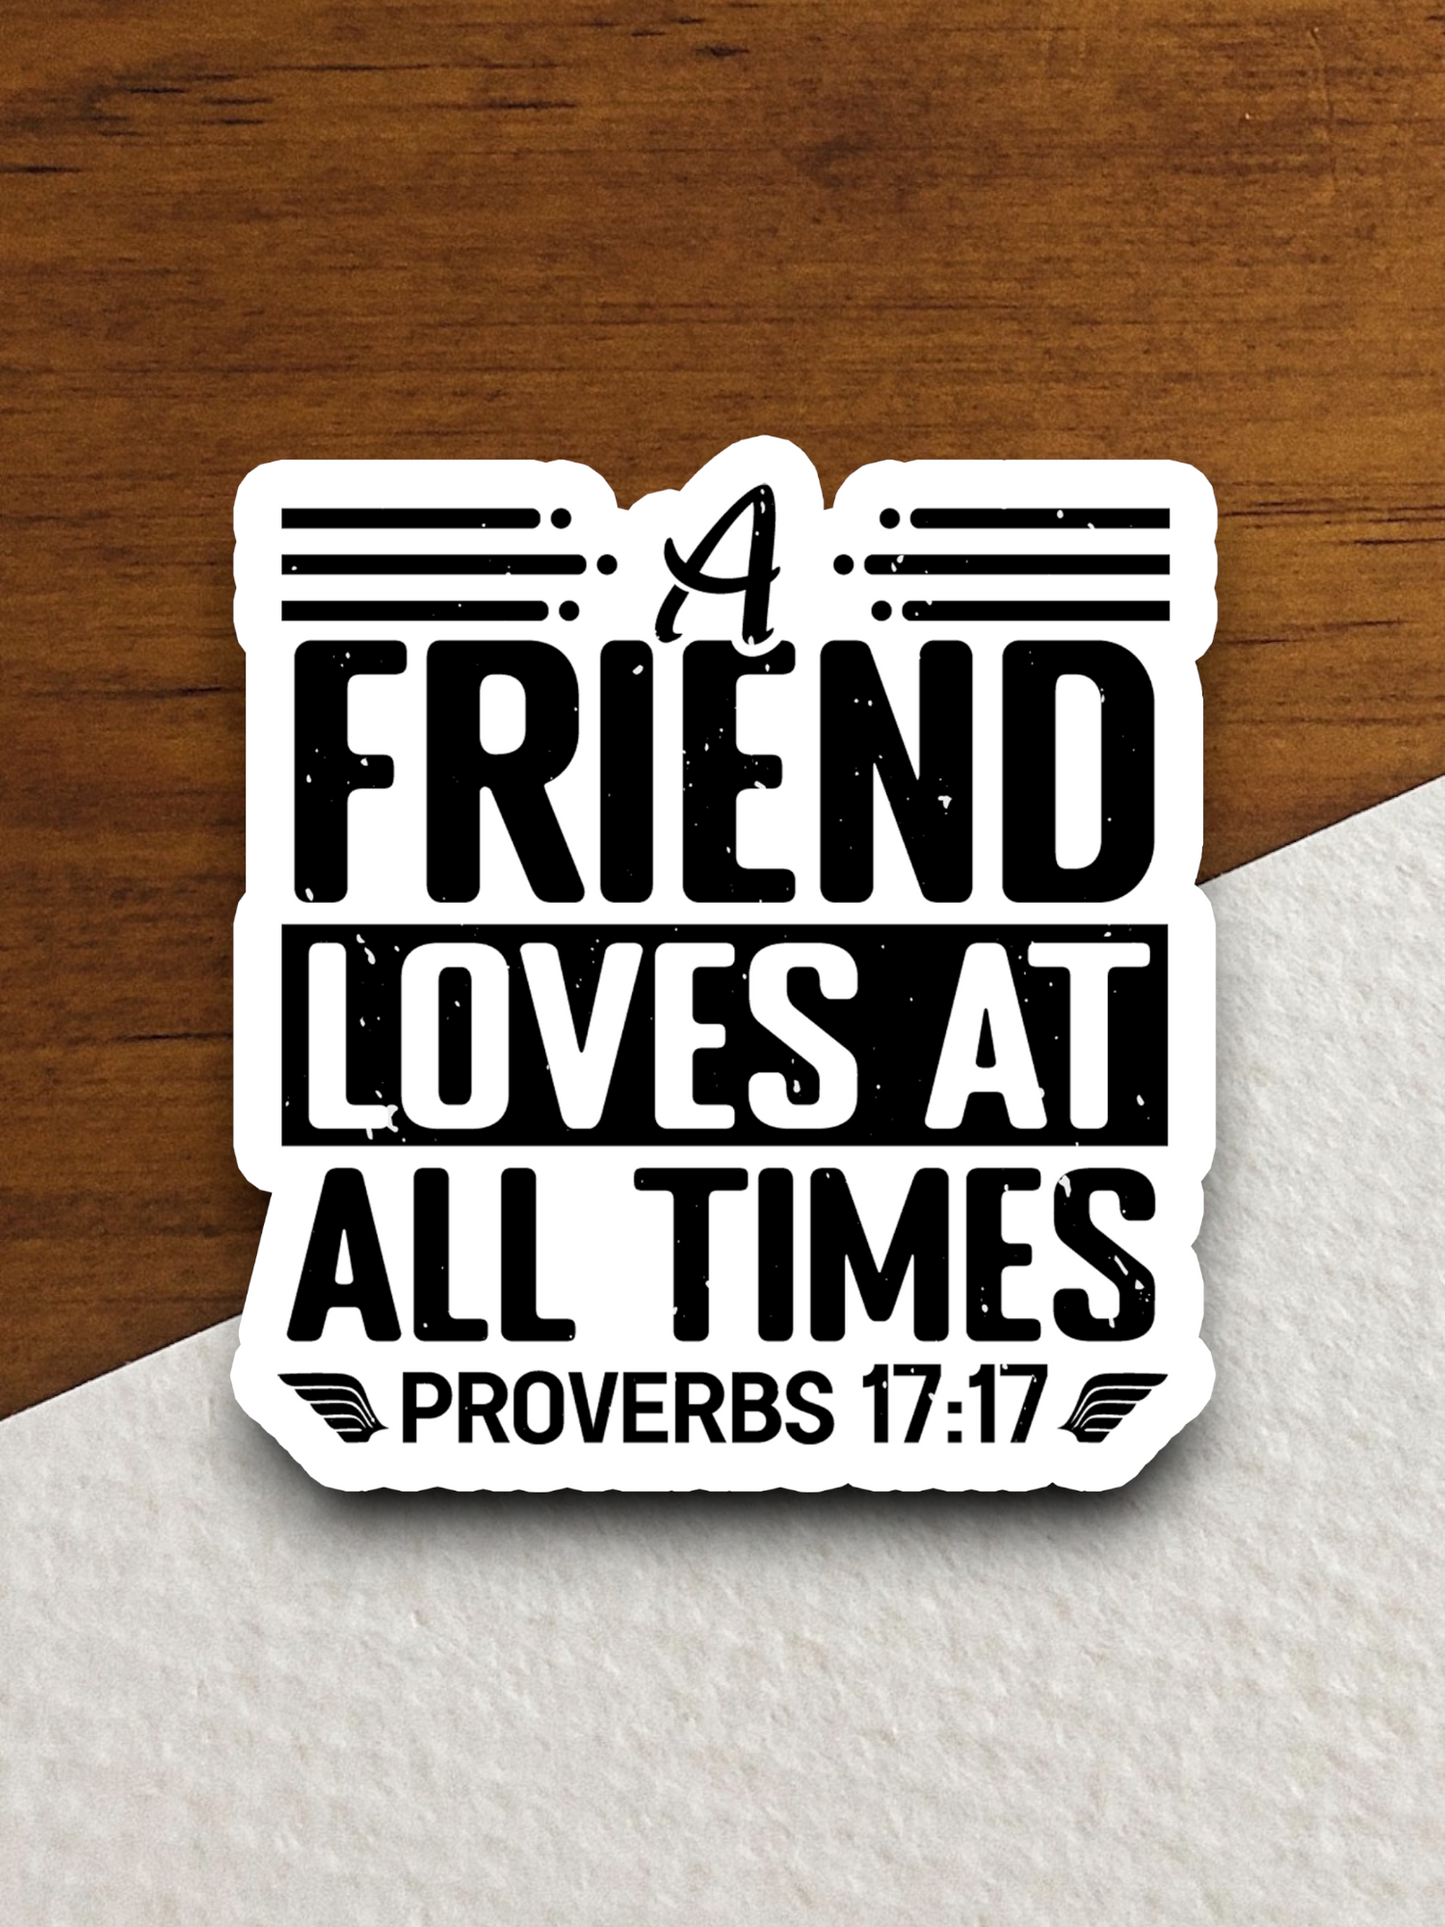 A Friend Loves at All Times - Faith Sticker